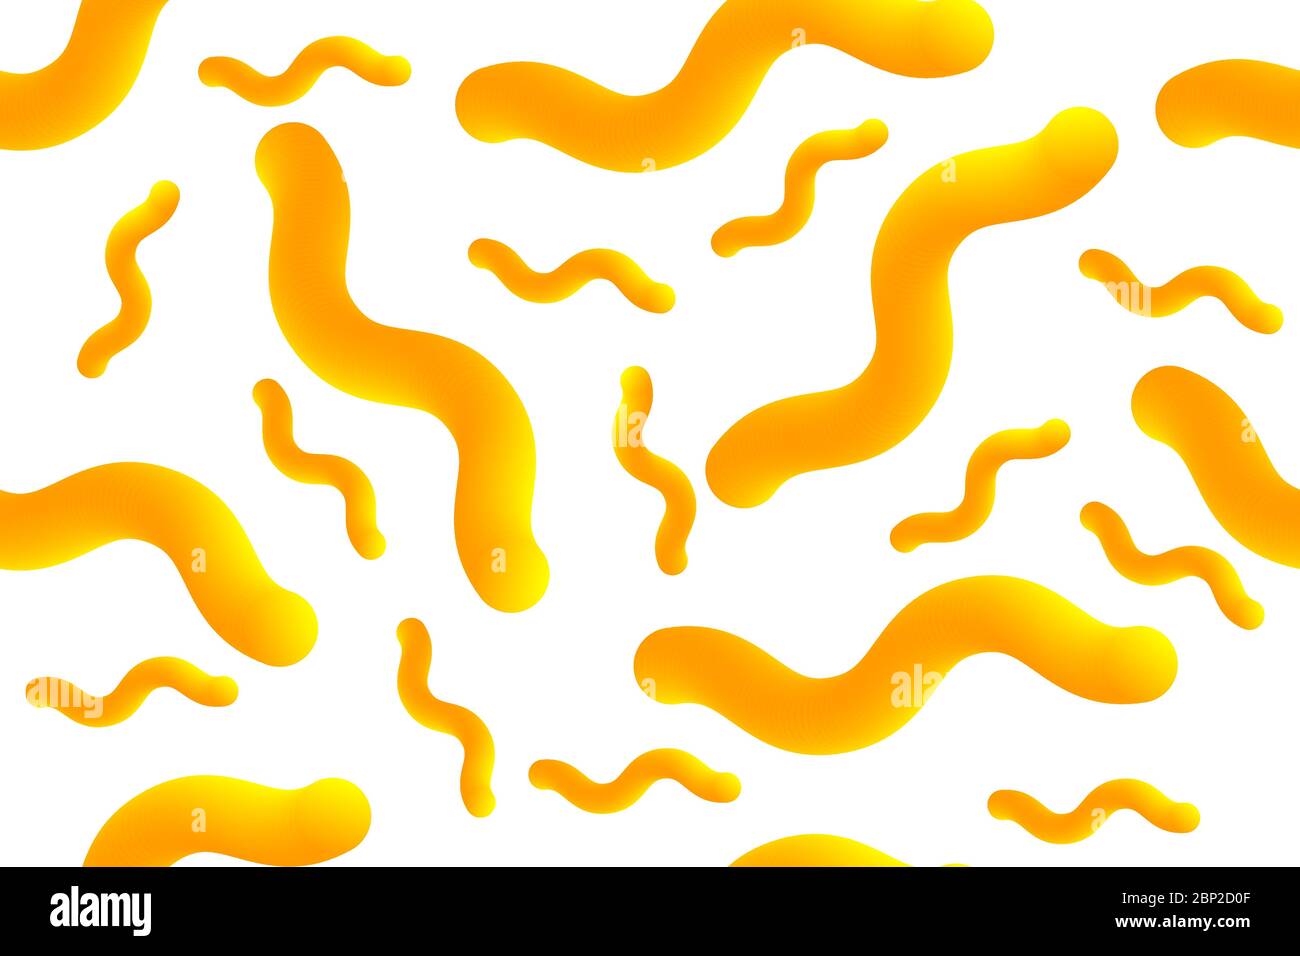 Fond créatif pour l'emballage des pâtes ou makaroni avec des éléments 3D. Bannière transparente Worms Paste. Étiquette avec formes géométriques abstraites jaunes Illustration de Vecteur